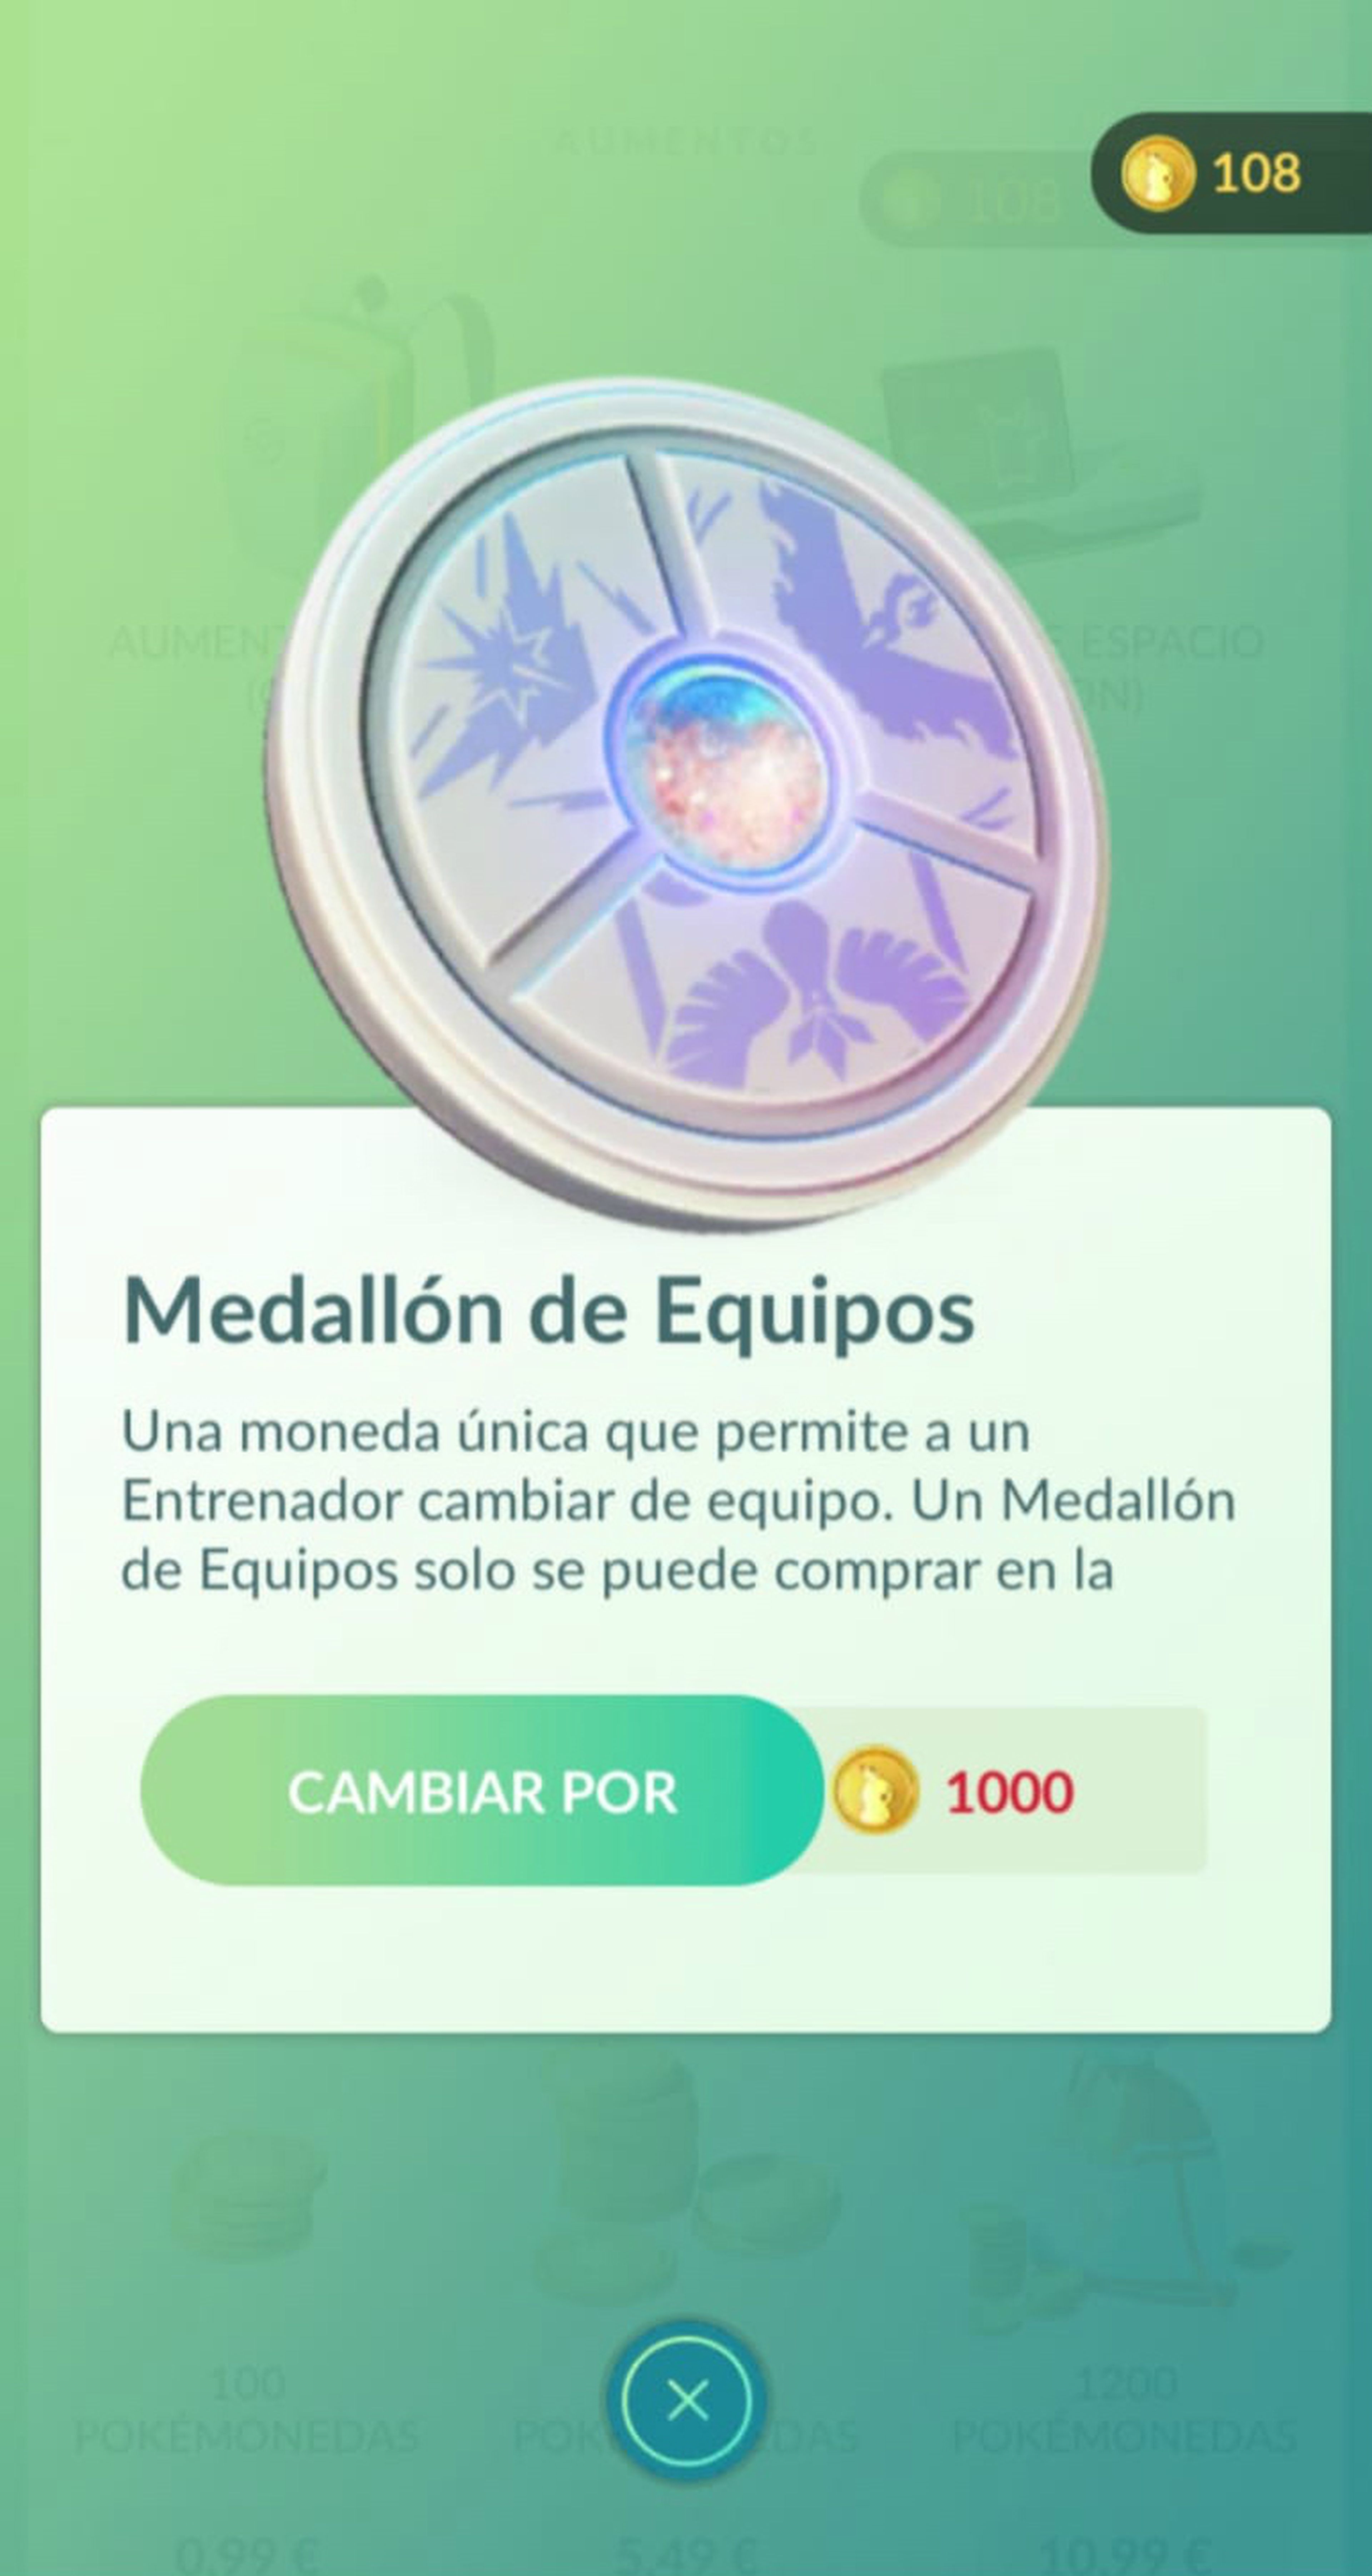 Medallón de equipos en Pokémon GO